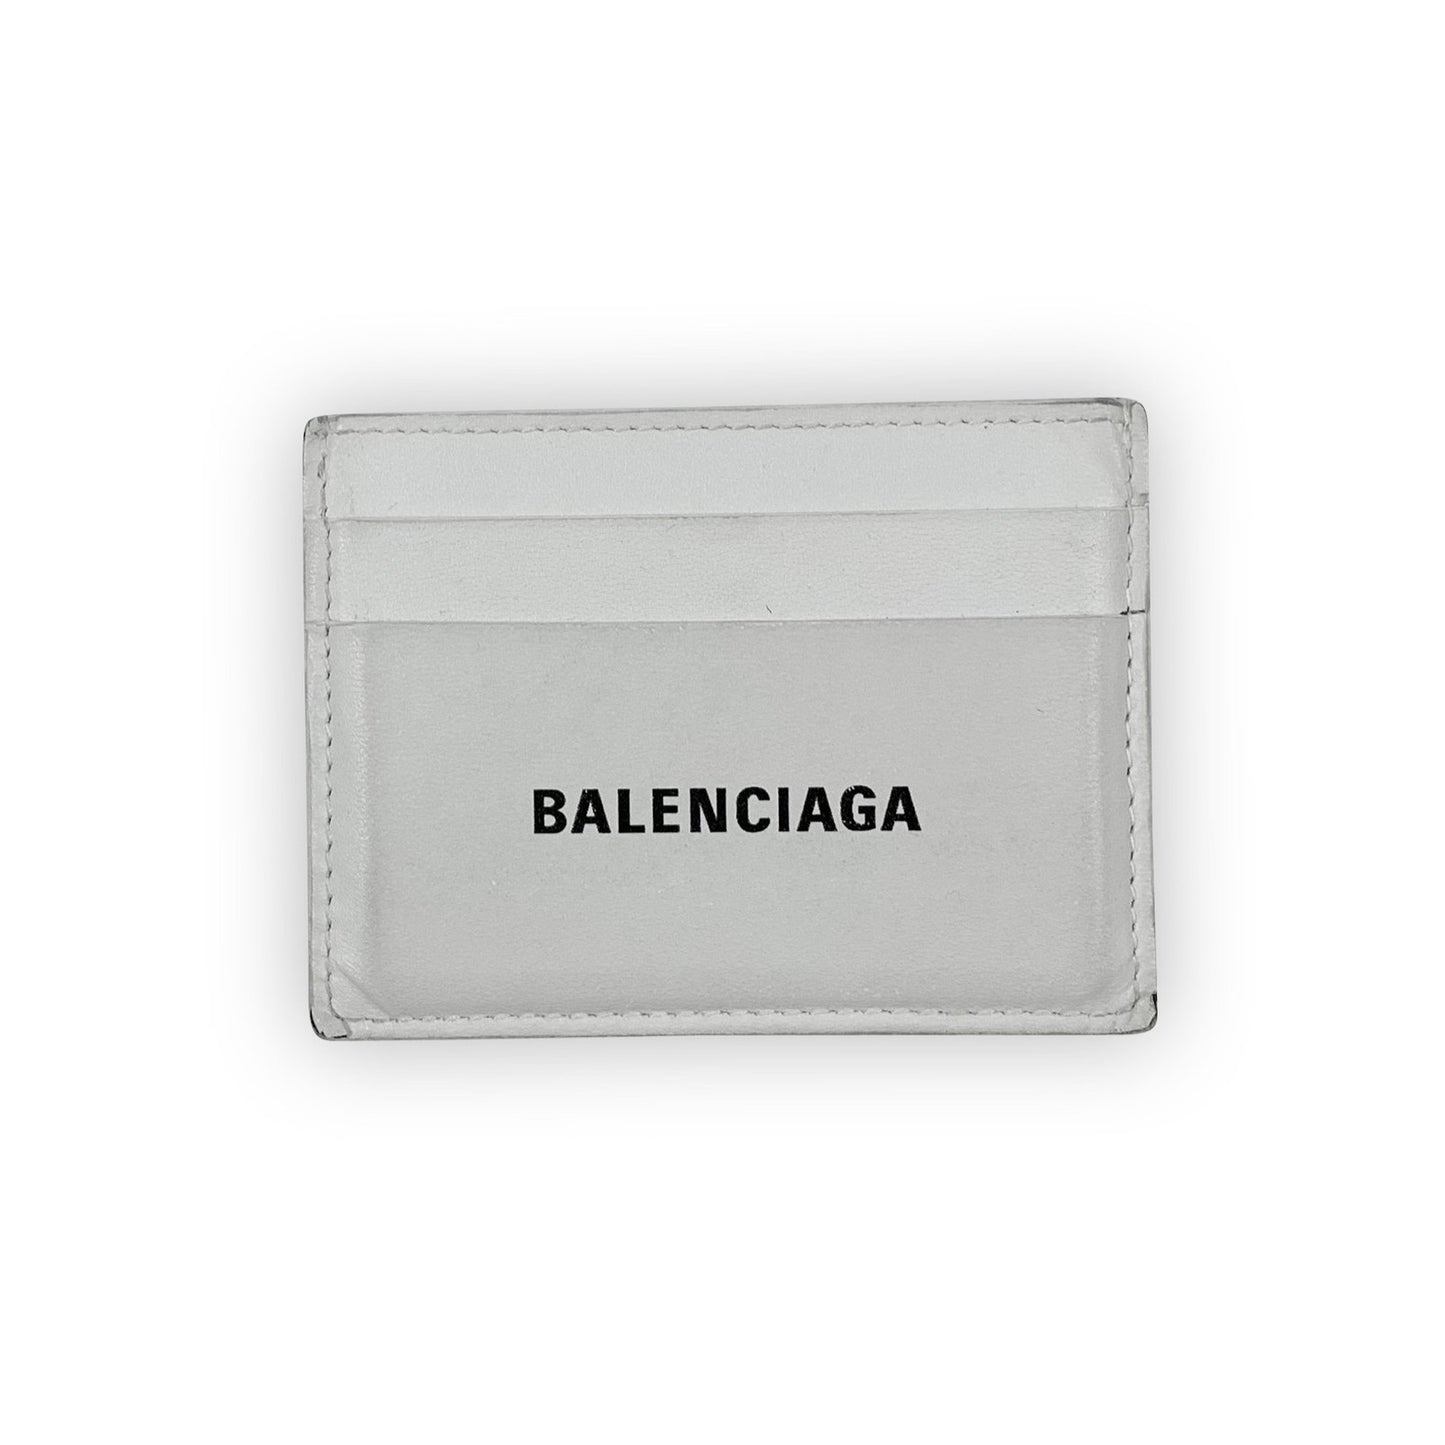 BALENCIAGA Card Holder